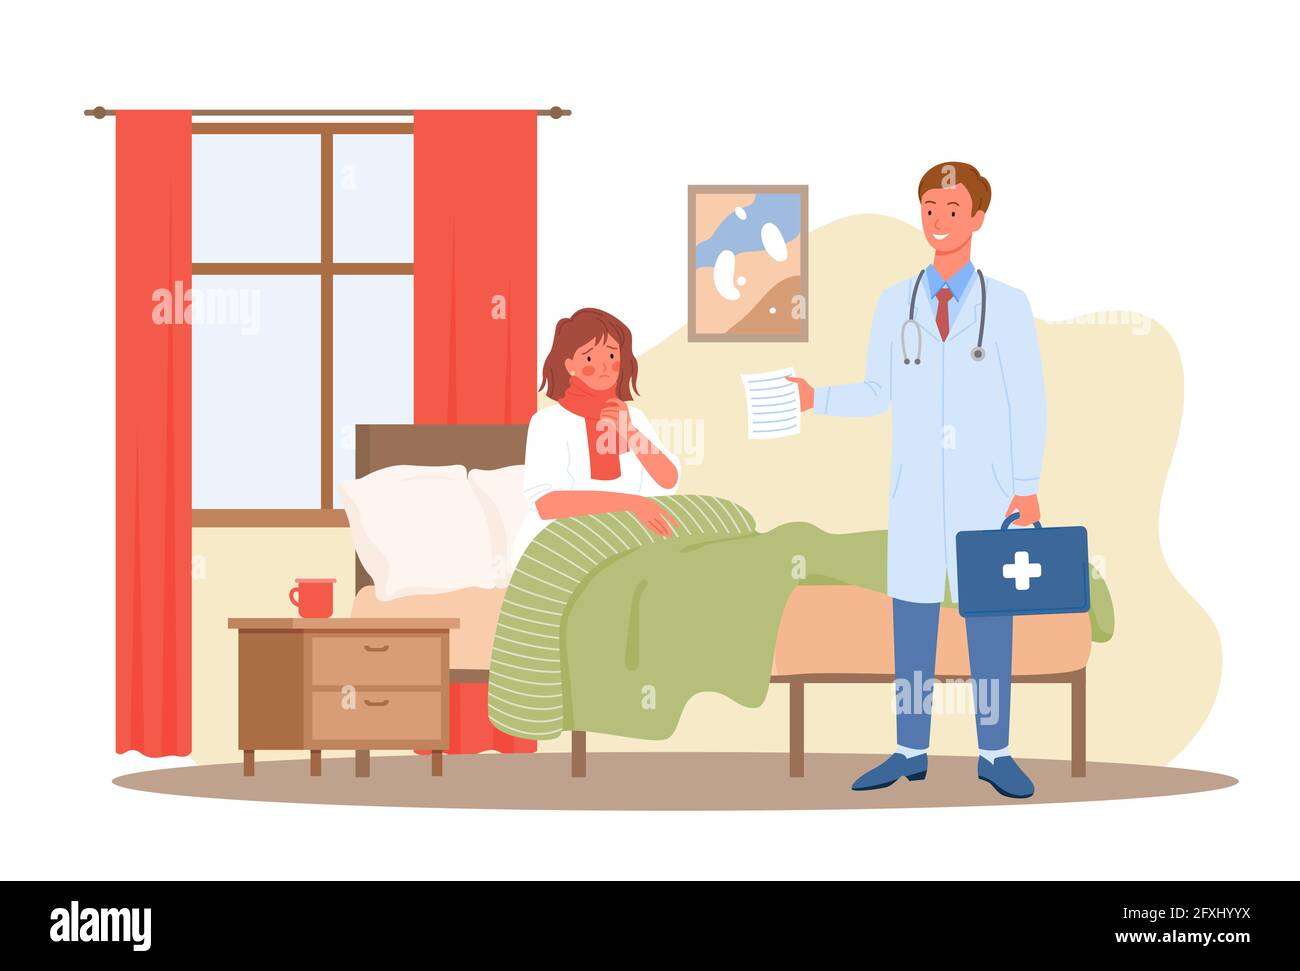 Visite de médecin, concept de service de santé de diagnostic médical avec patient malade au lit Illustration de Vecteur